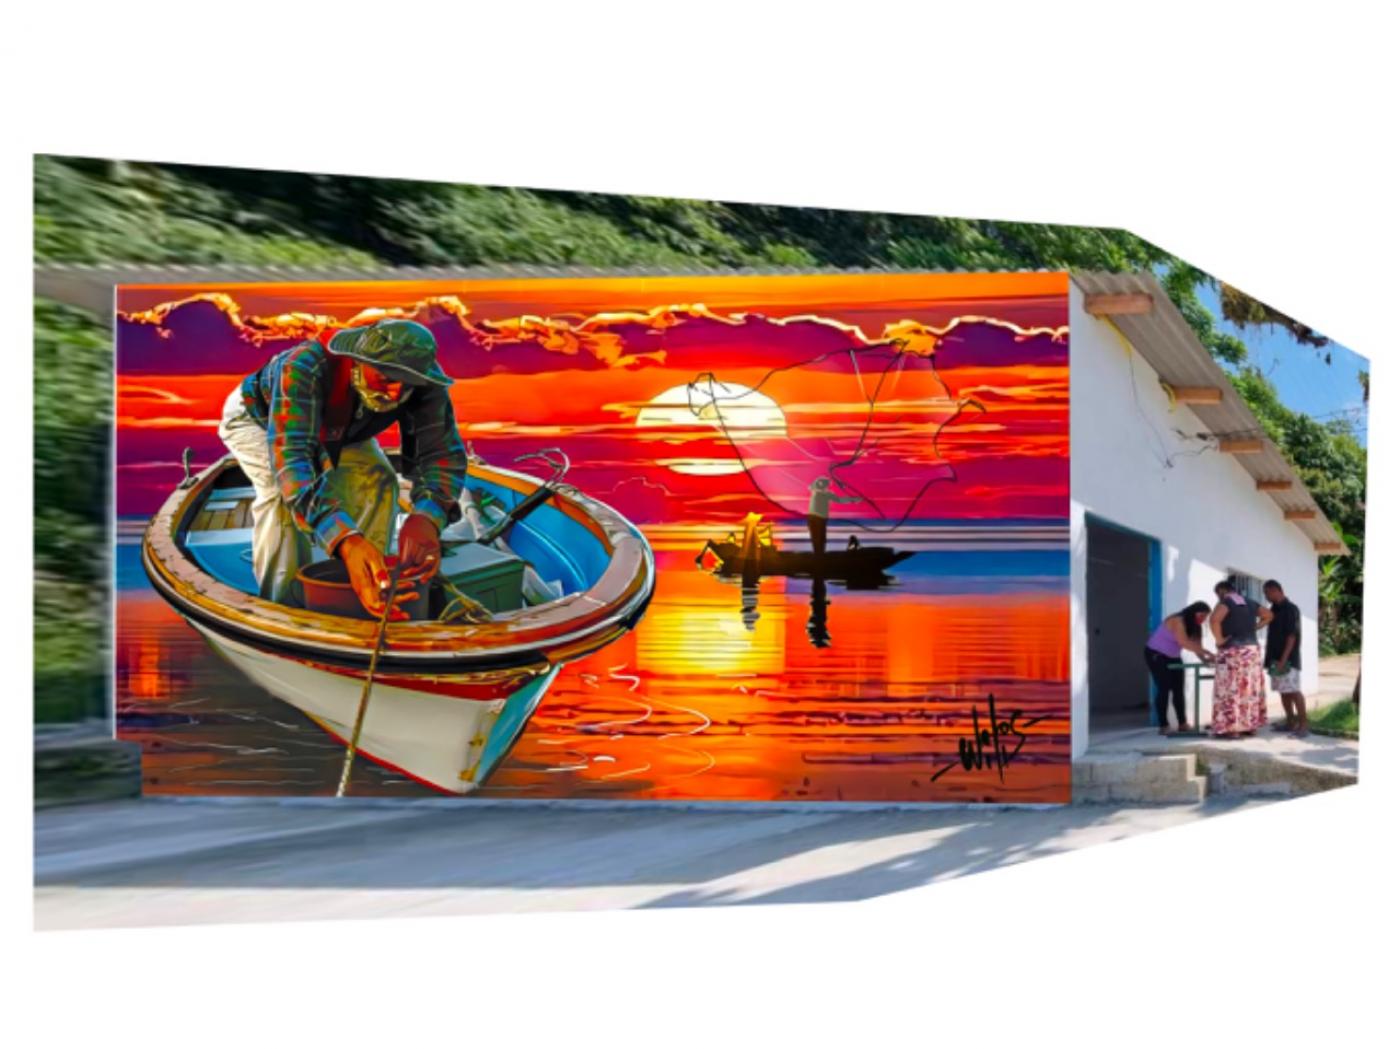 mural mostra um pescador num barco com por do sol ao fundo. O mural decora muro de prédio público. #paratodosverem